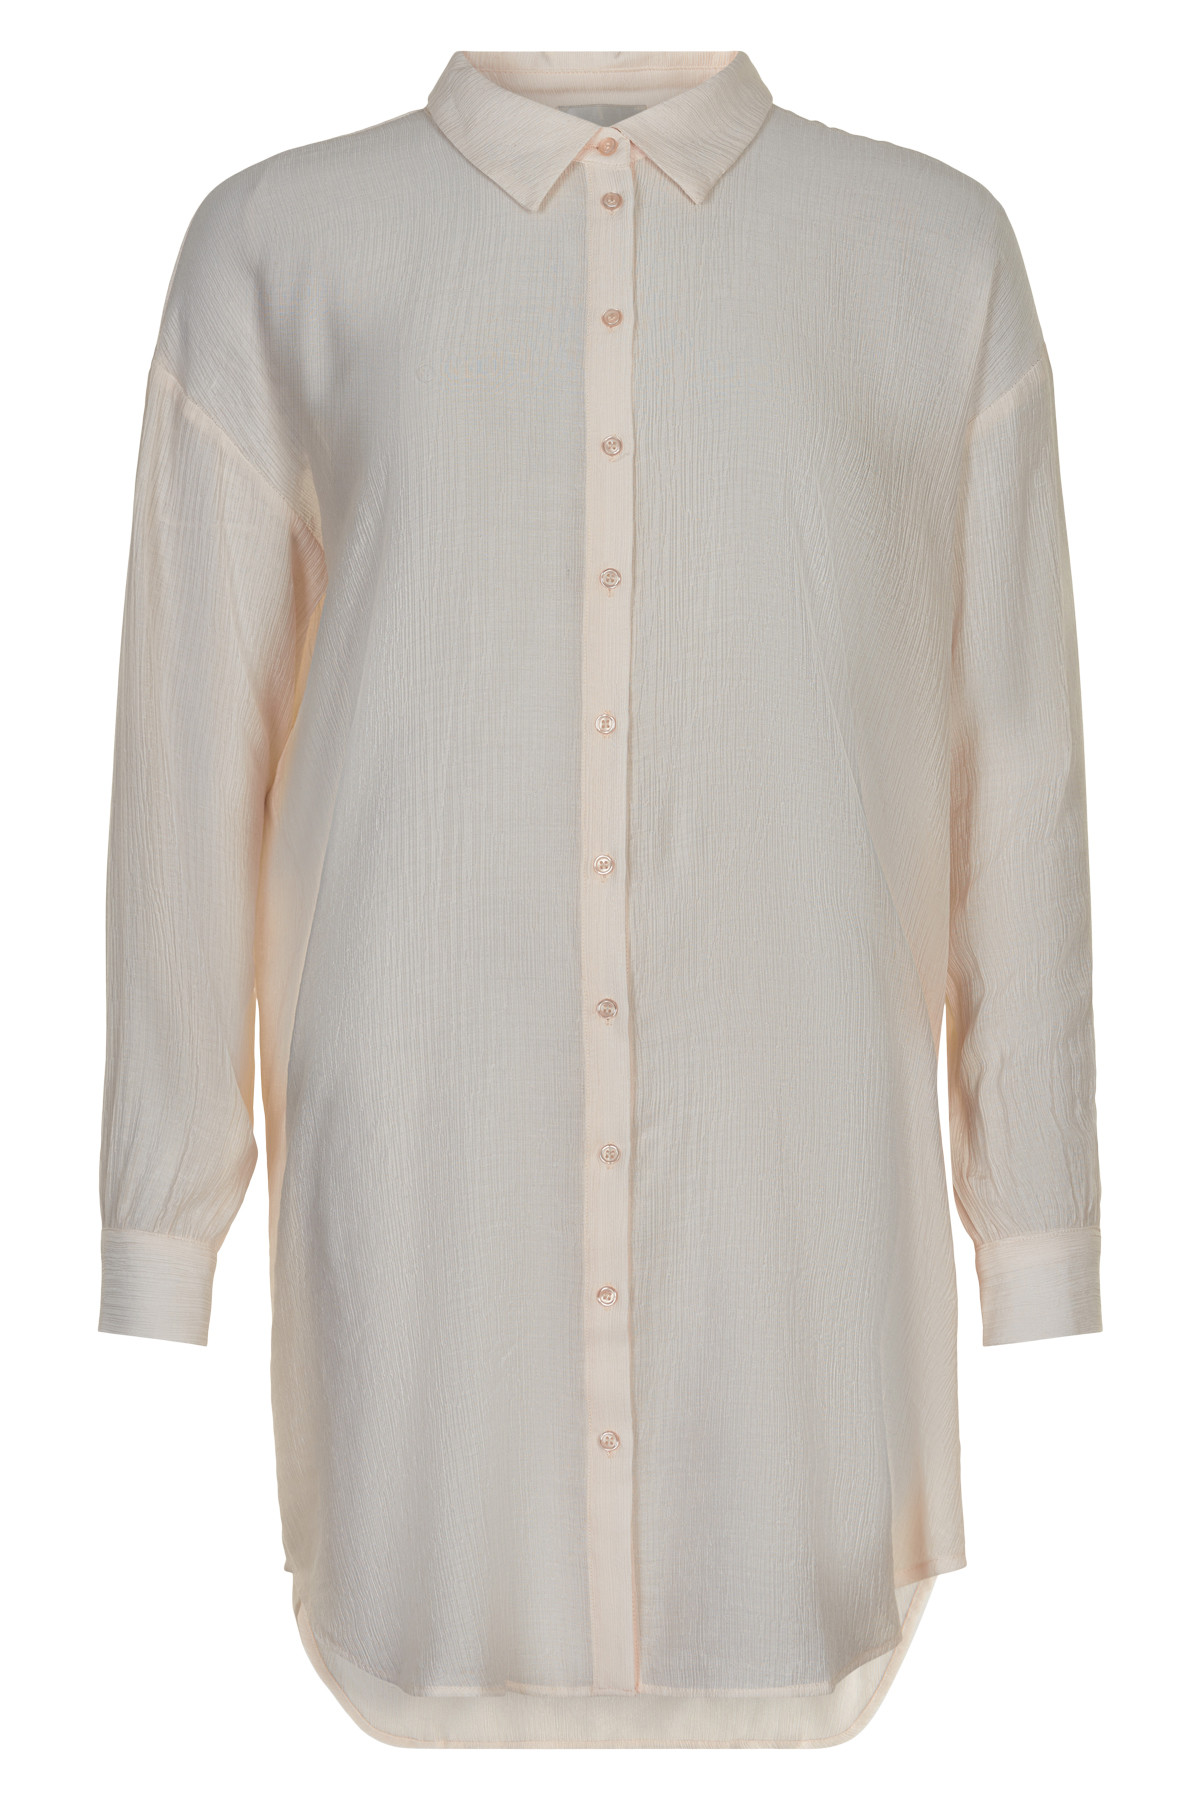 6: My Essential Wardrobe Alma Lang Skjorte, Farve: Hvid, Størrelse: 34, Dame